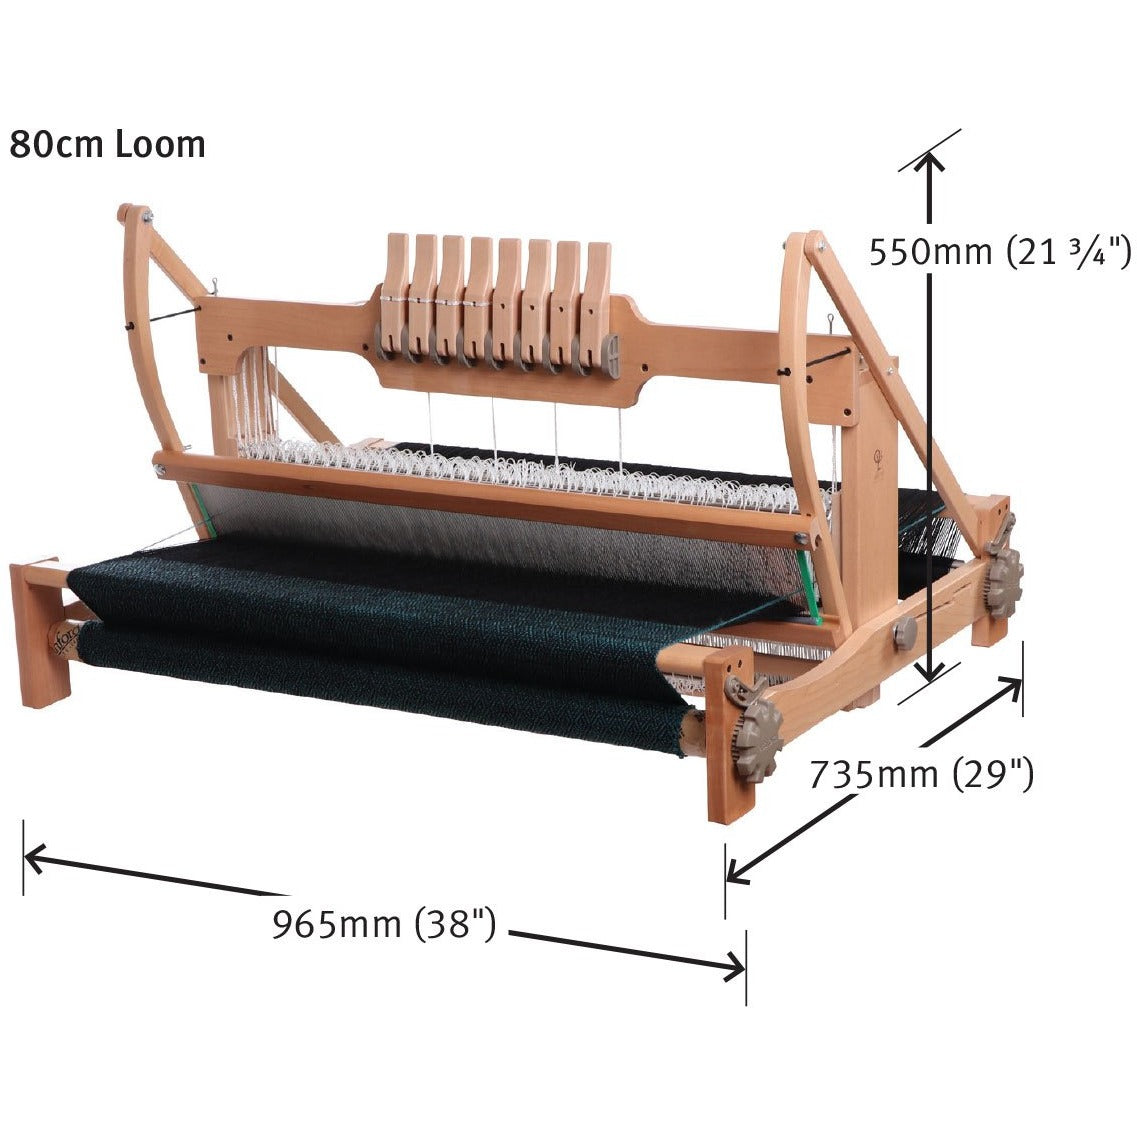 Ashford Table Loom - FREE Shipping